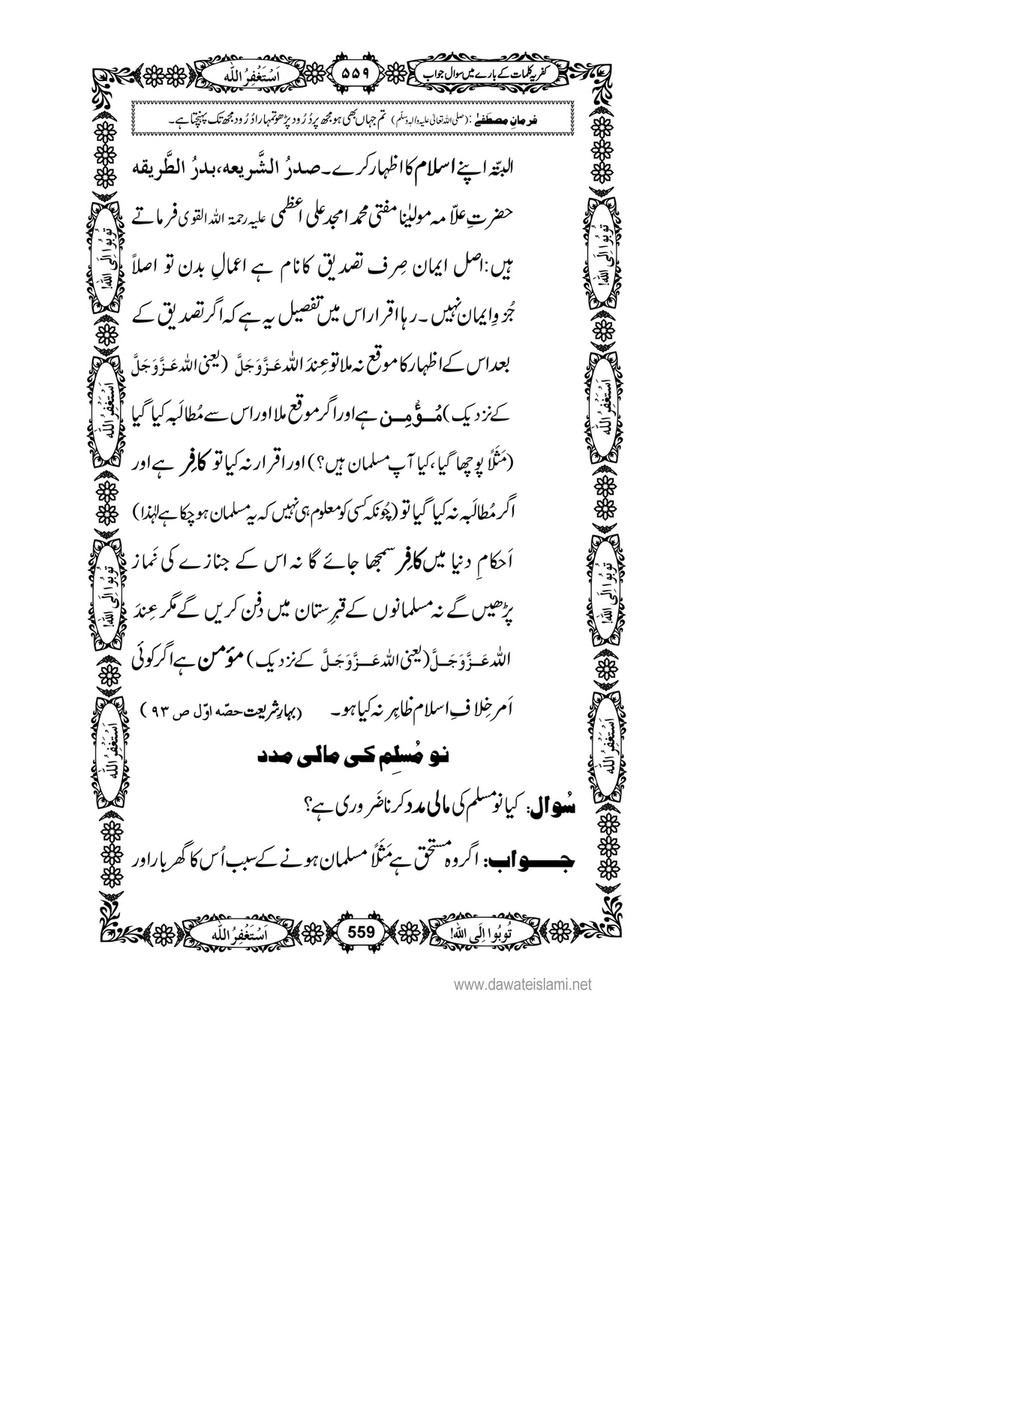 My Publications Kufriya Kalmaat Kay Baray Main Sawal Jawab Page 574 575 Created With Publitas Com